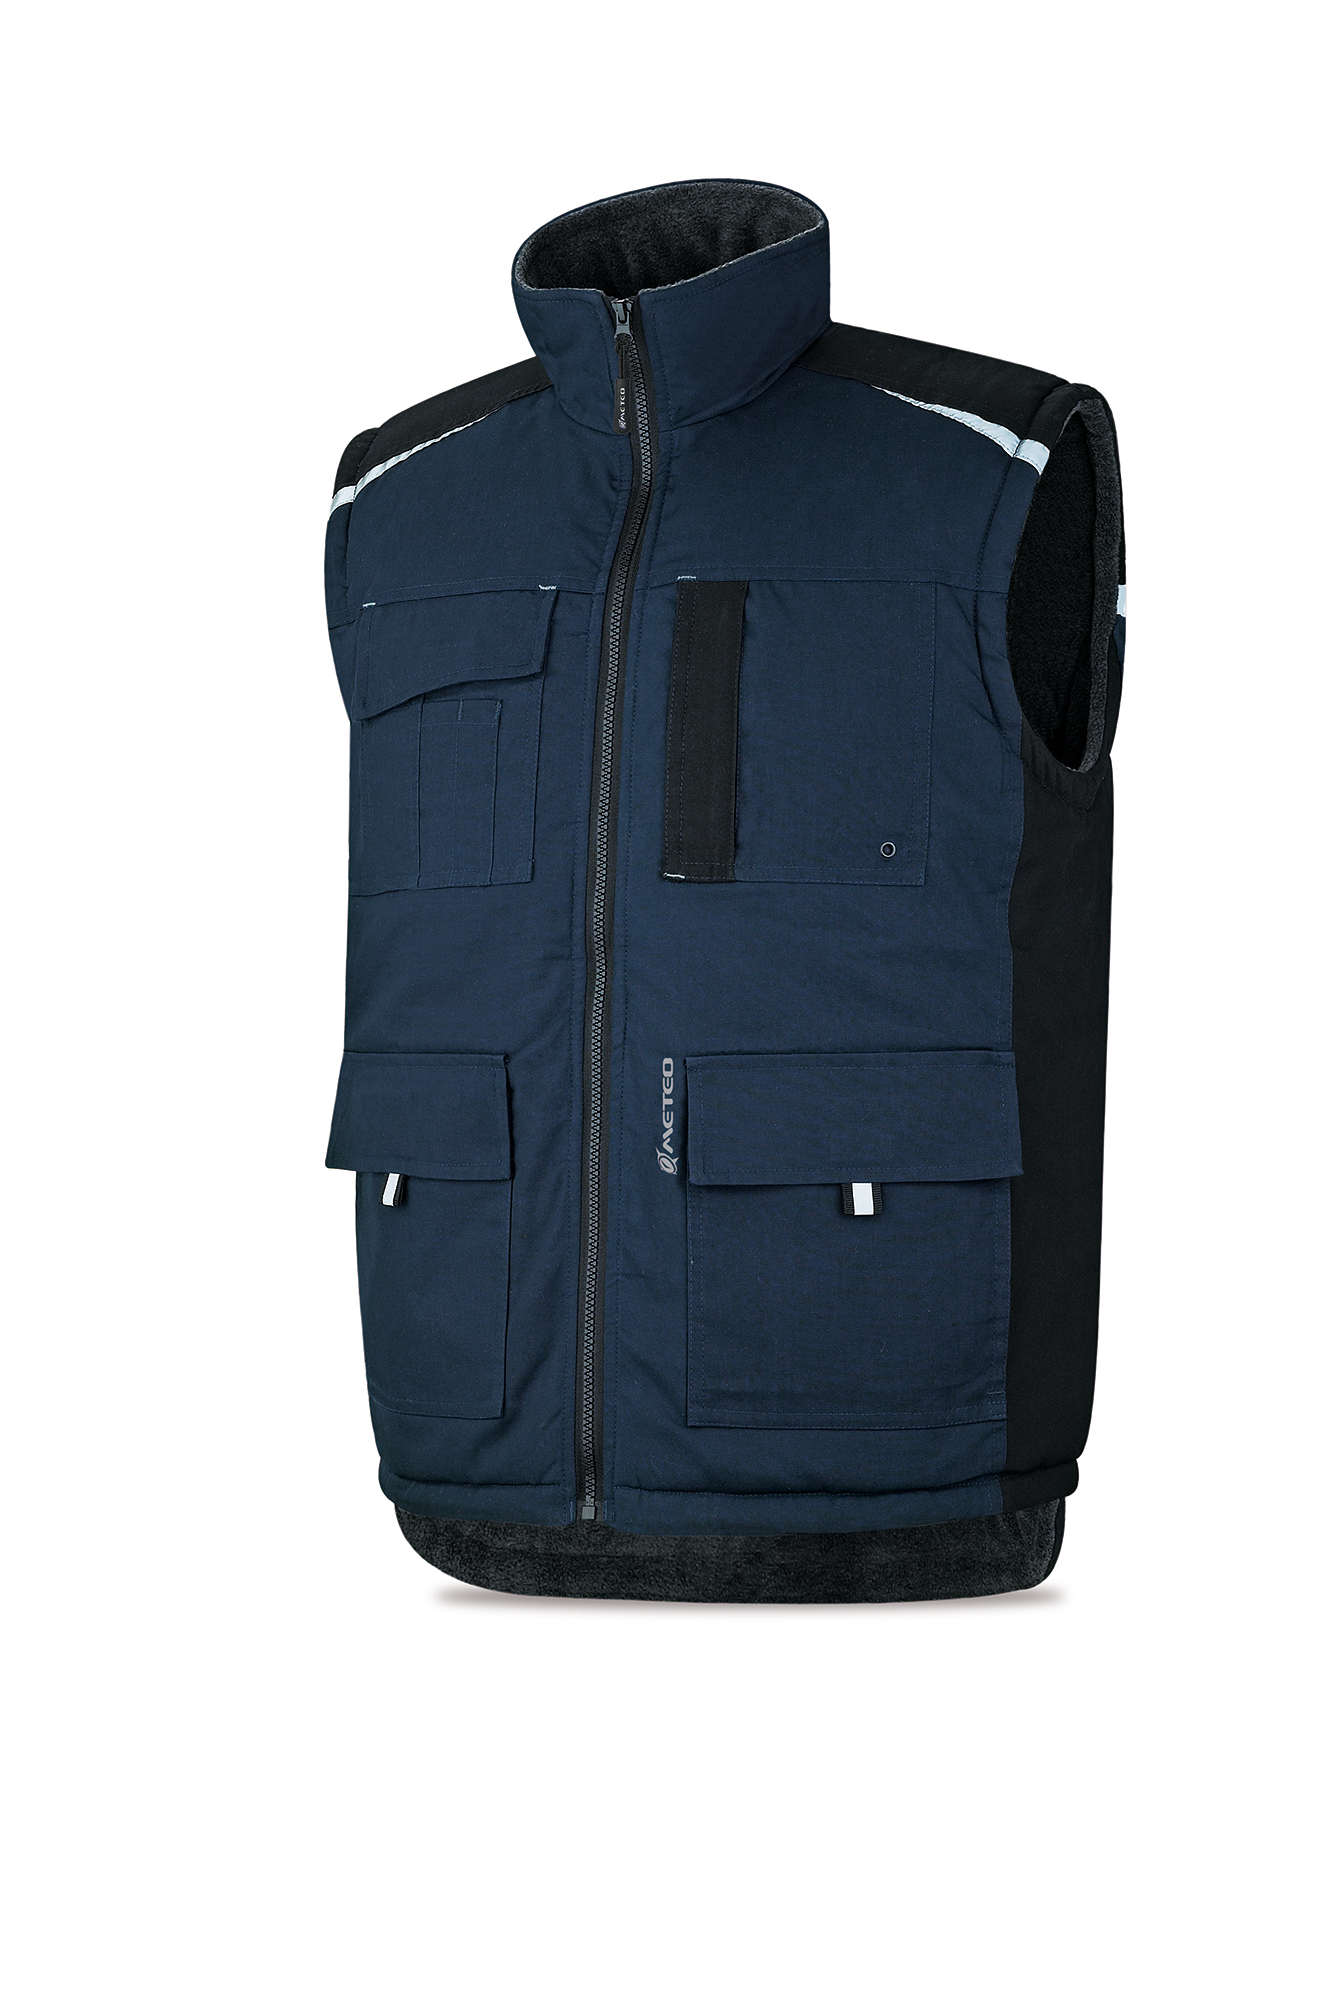 288-VPAM Coats and Rain Gear  Jackets Nautical sleeveless jacket blue navy model NERTHUS.